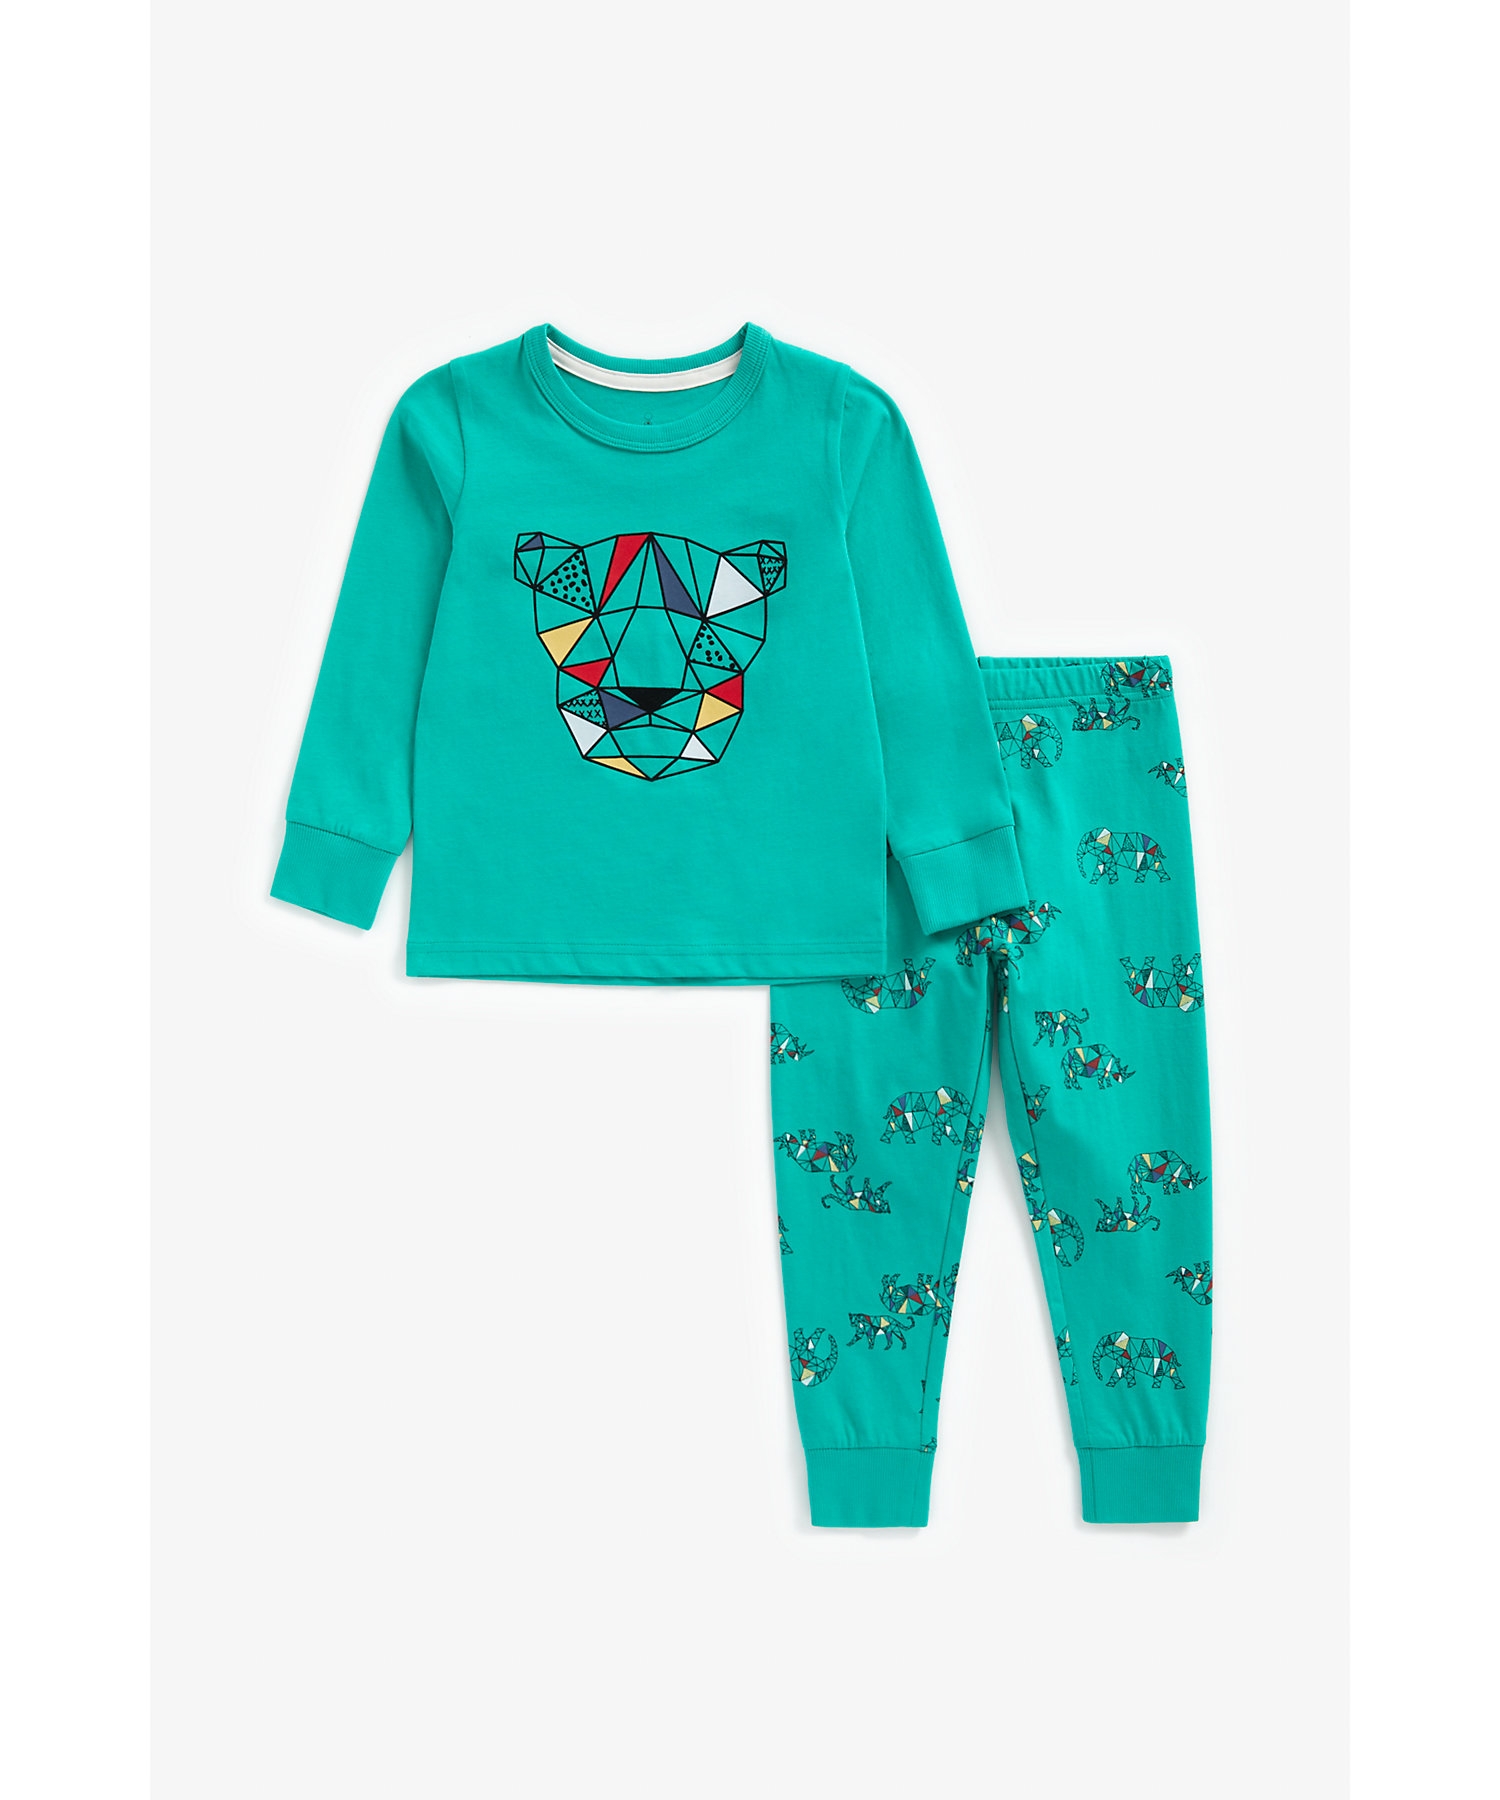 Mothercare | Boys Full Sleeves Pyjama Set Geo Safari Print - Teal 0